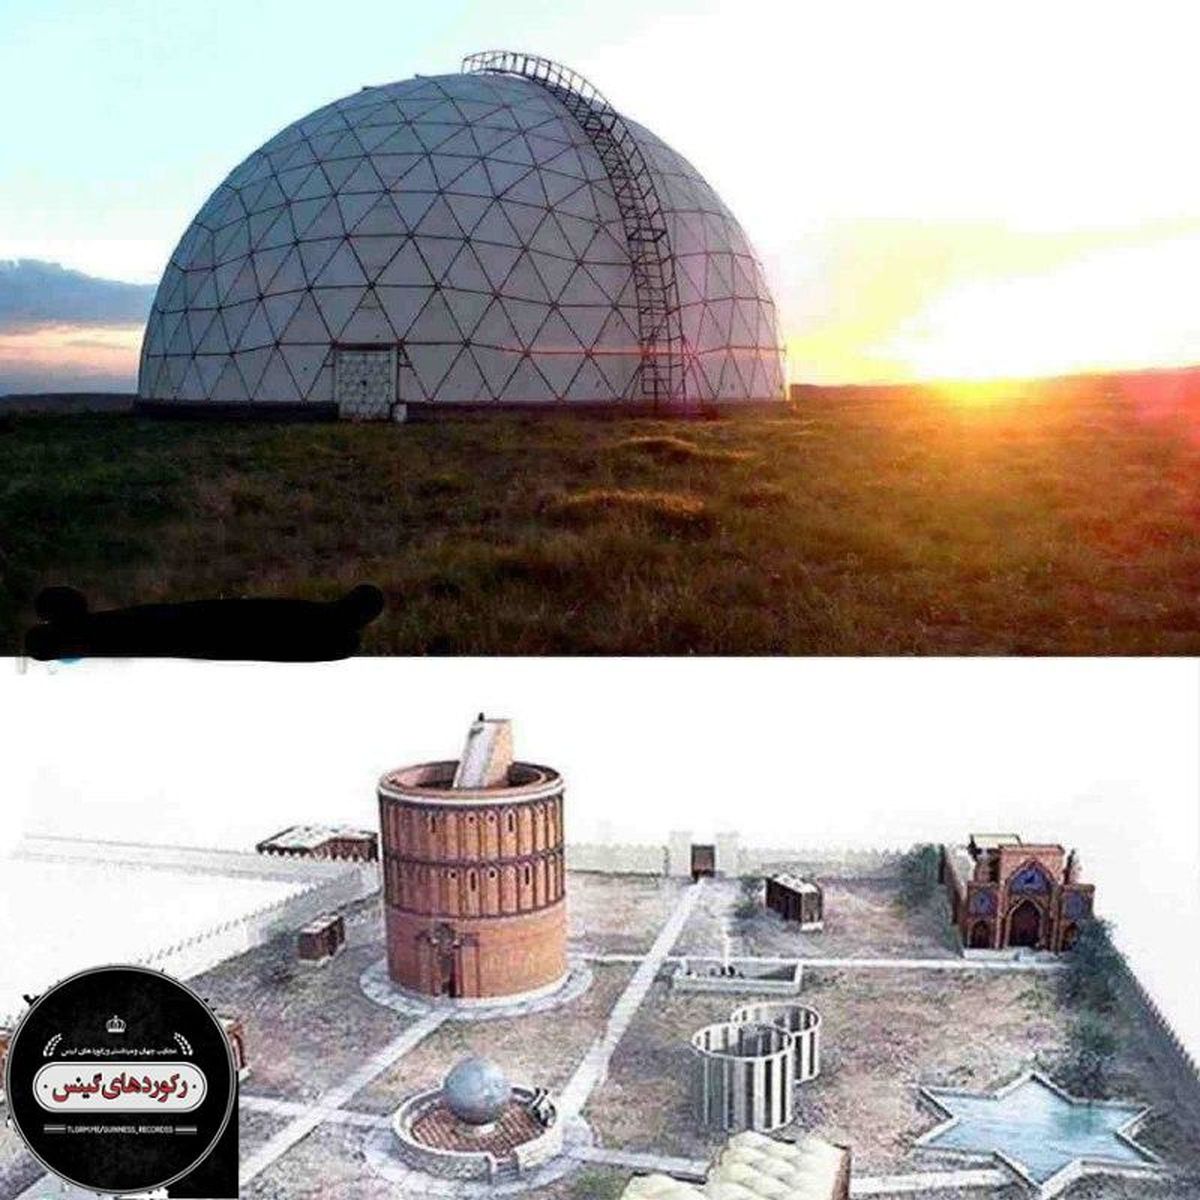 پیشرفته ترین و قدیمی ترین رصدخانه در ایران